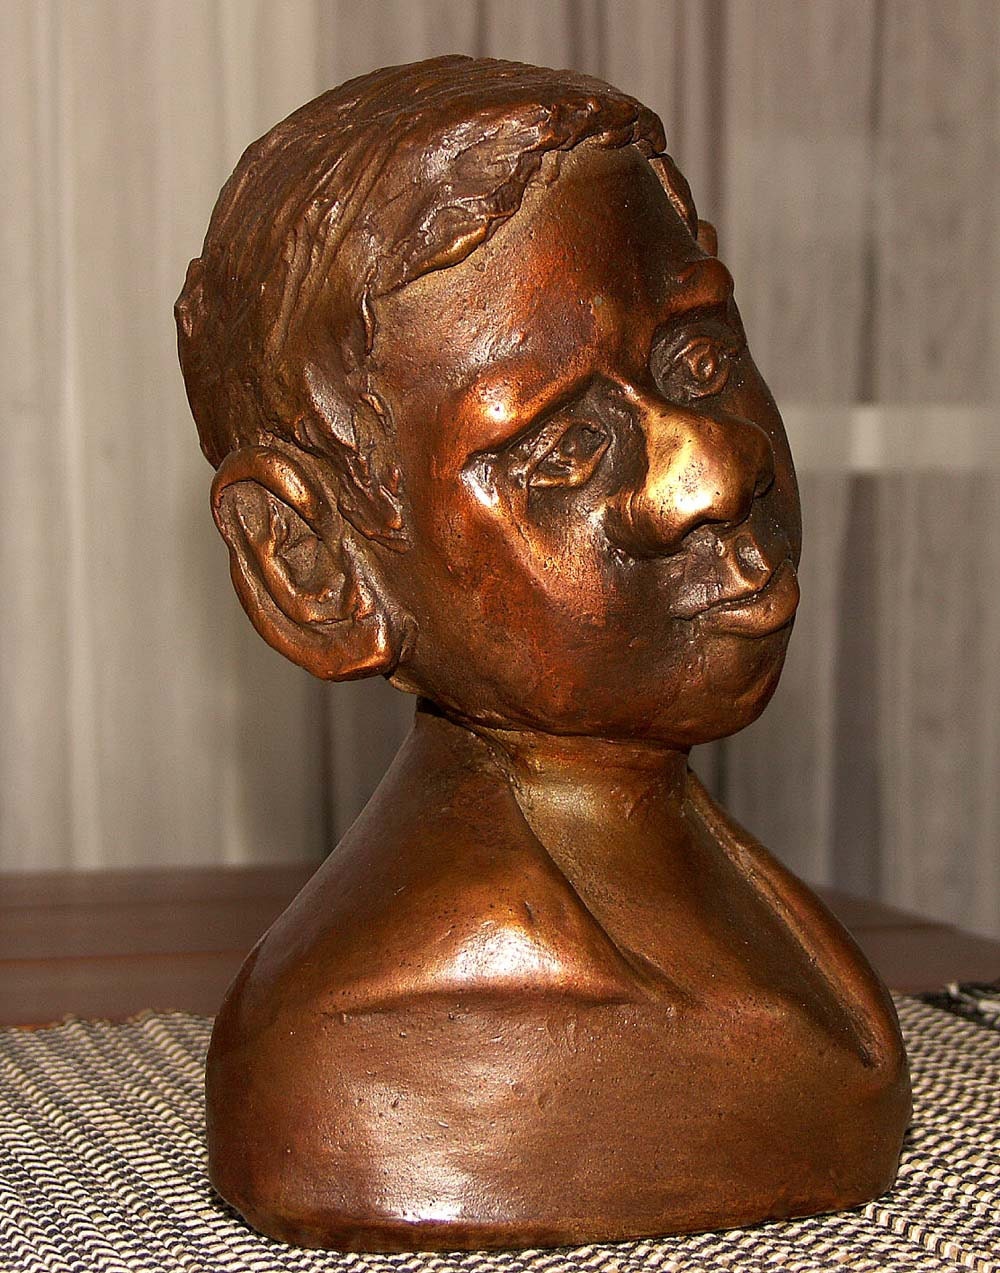 Bronze sculpture, "Thinking"  by Lazaroff